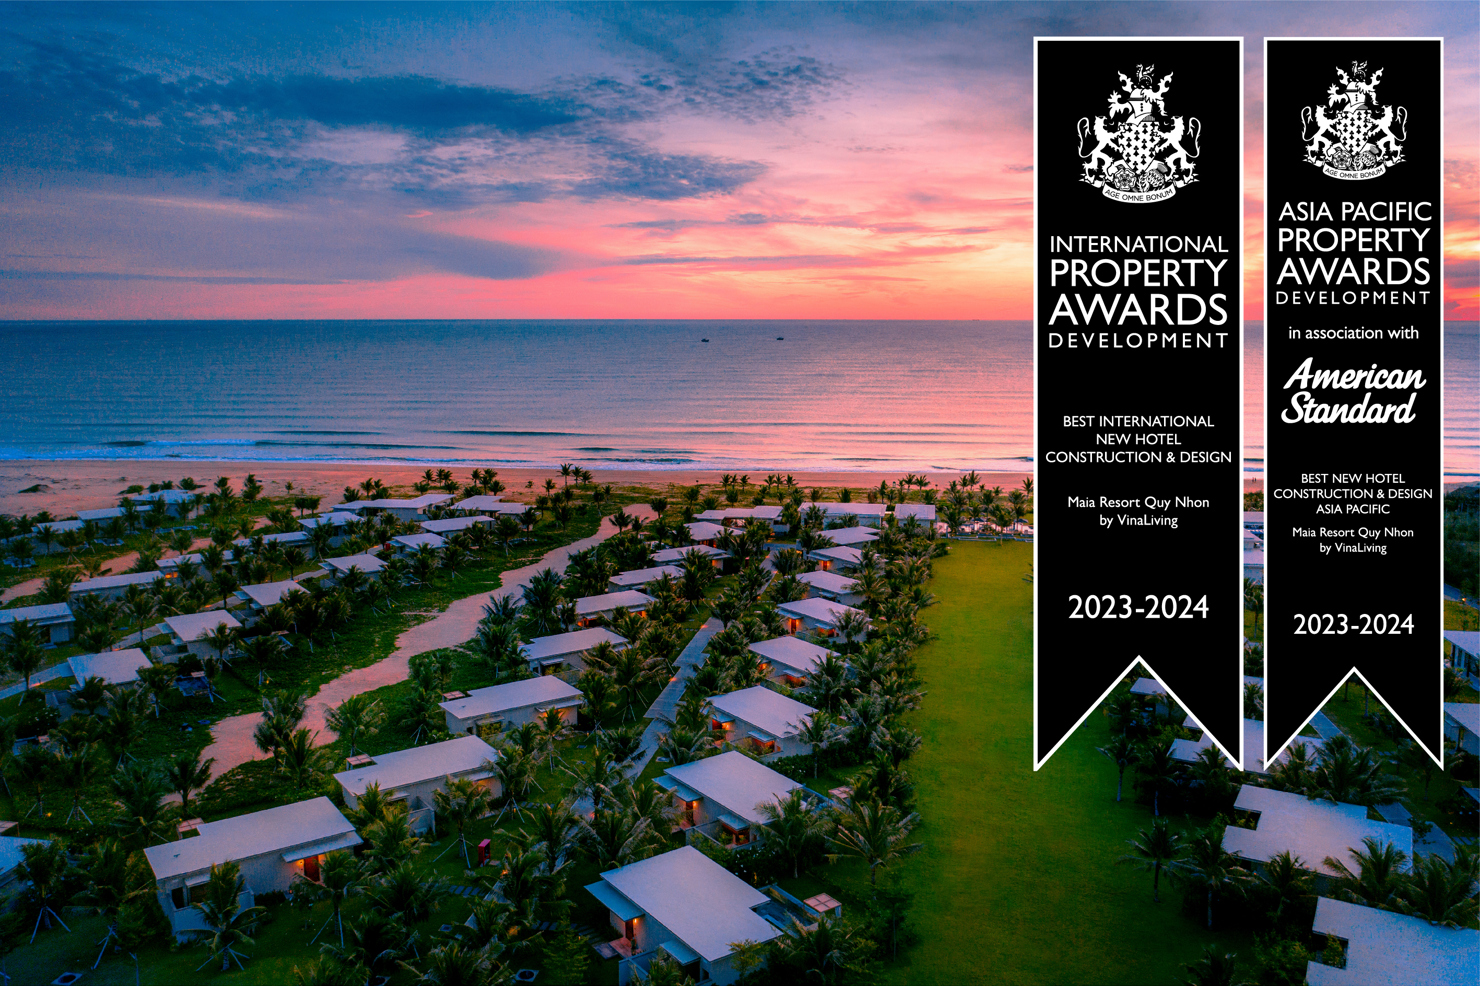 Maia Resort Quy Nhon được vinh danh ở cả Giải Quốc Tế và Khu vực Châu Á - Thái Bình Dương cho hạng mục Khách sạn có Thiết kế và Xây dựng tốt nhất.